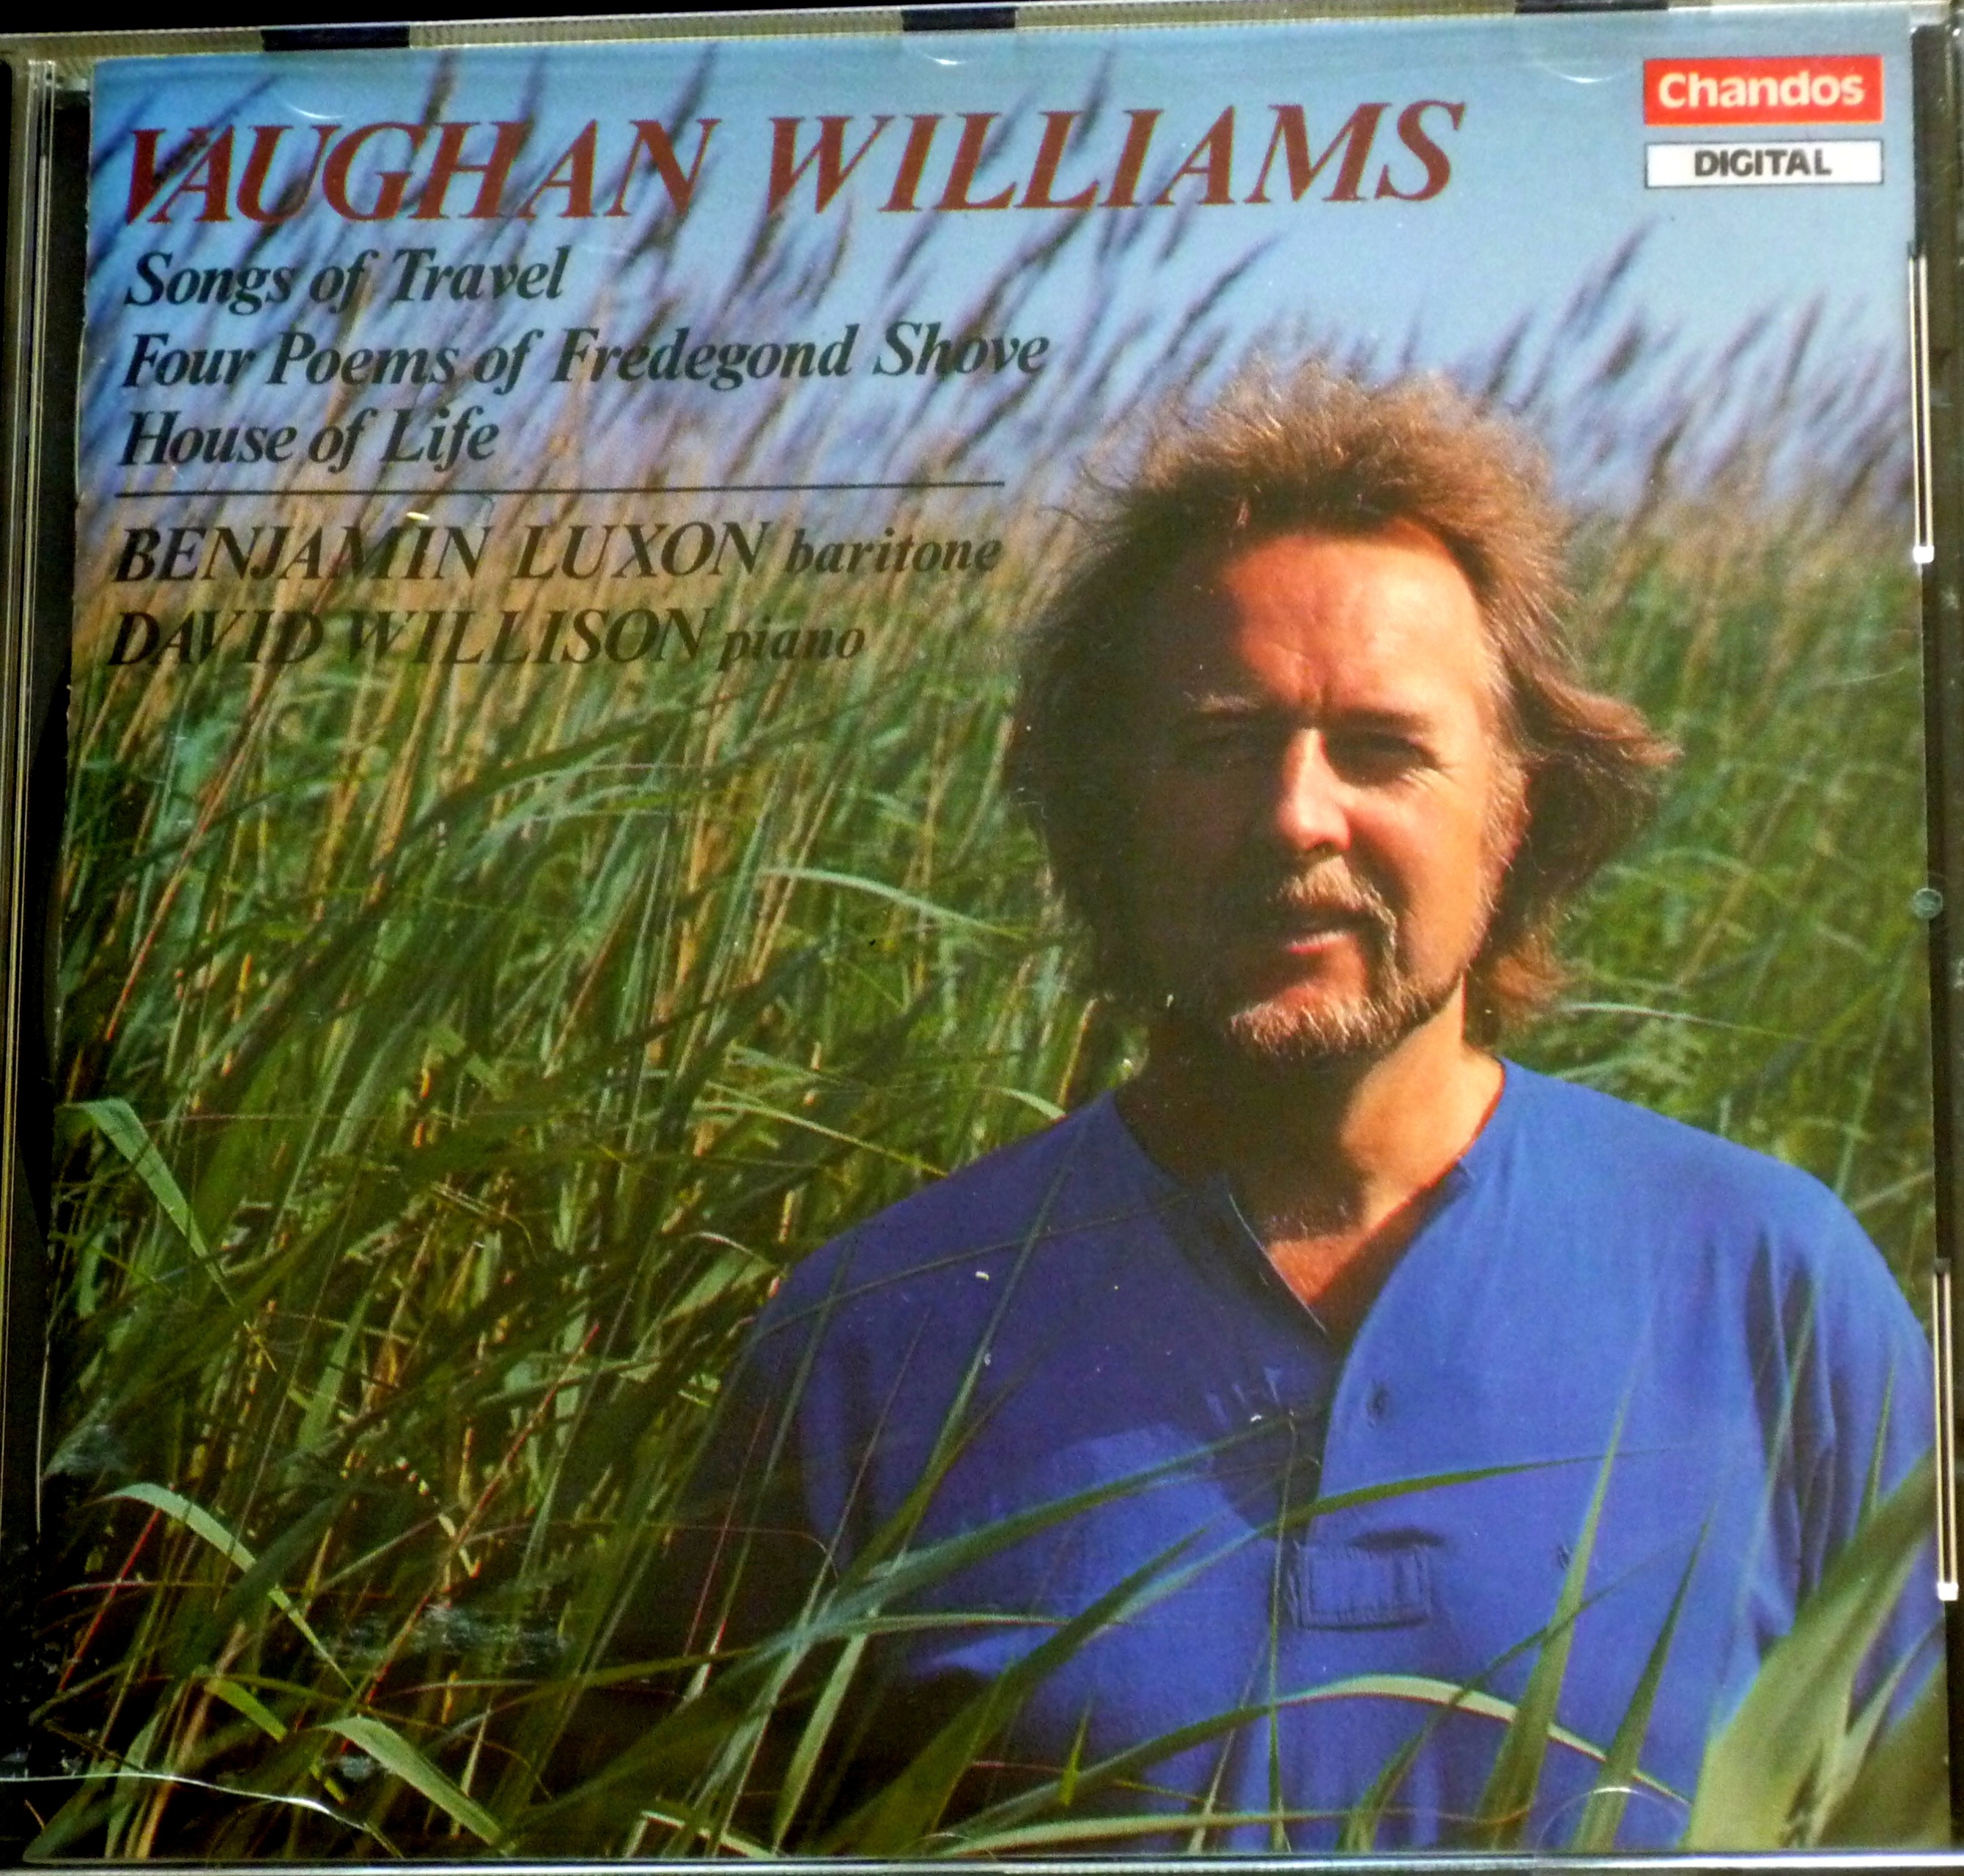 songs of travel vaughan williams